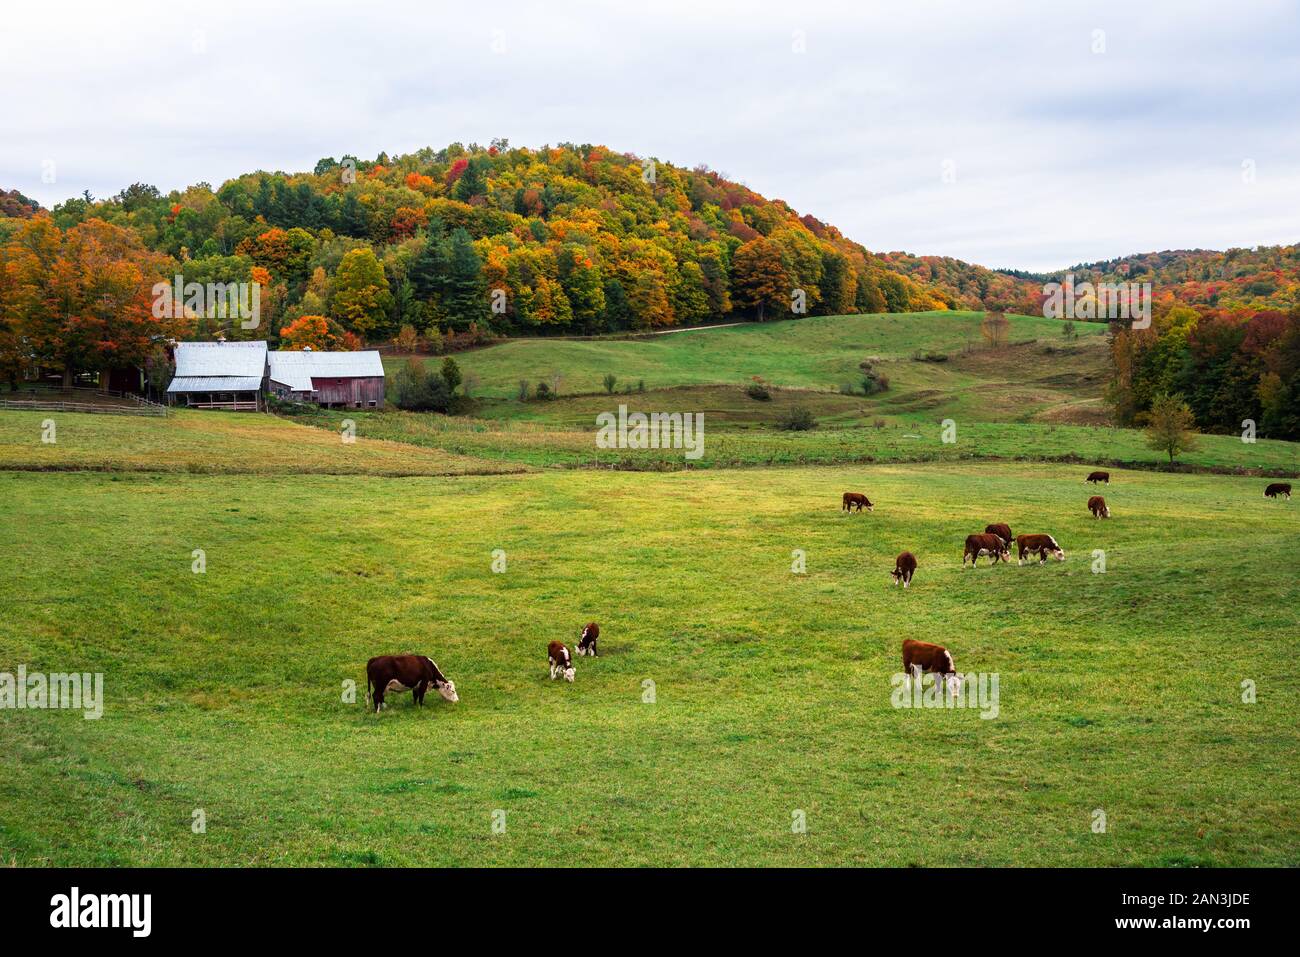 Rinder grasen in einem Feld mit landwirtschaftlichen Gebäuden am Fuße des bunten bewaldete Hügel im Hintergrund an einem bewölkten Herbst Tag. Herbst Laub. Stockfoto